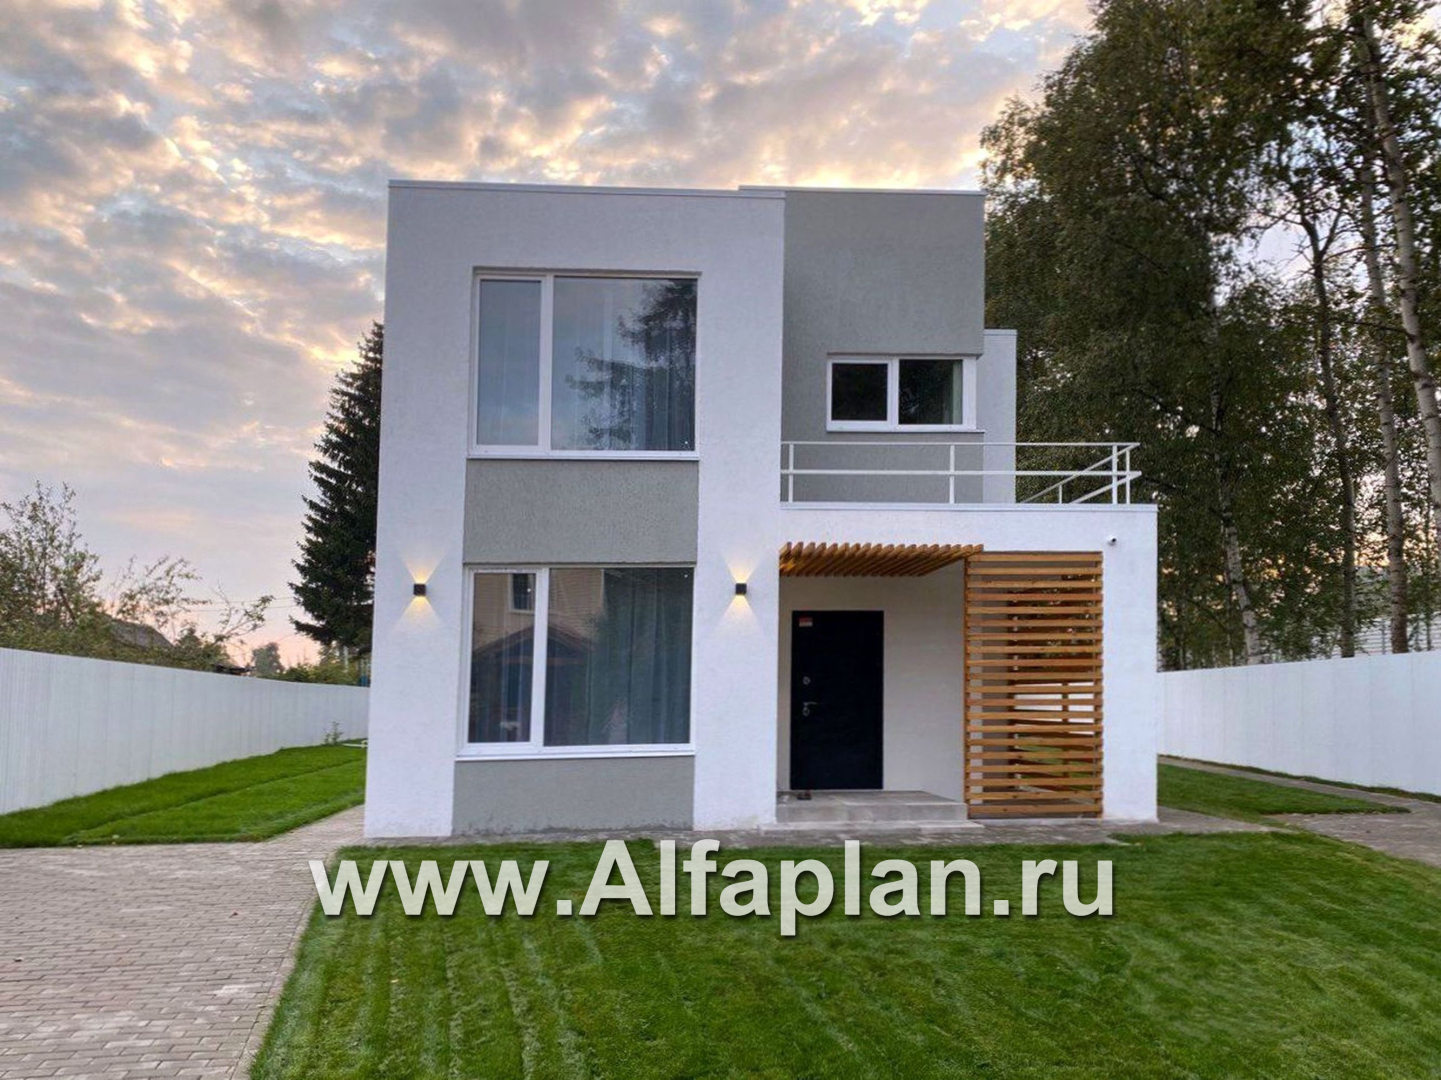 Проекты домов Альфаплан - «Арс» - проект двухэтажного дома с плоской кровлей, в стиле хай-тек, для узкого участка - дополнительное изображение №8